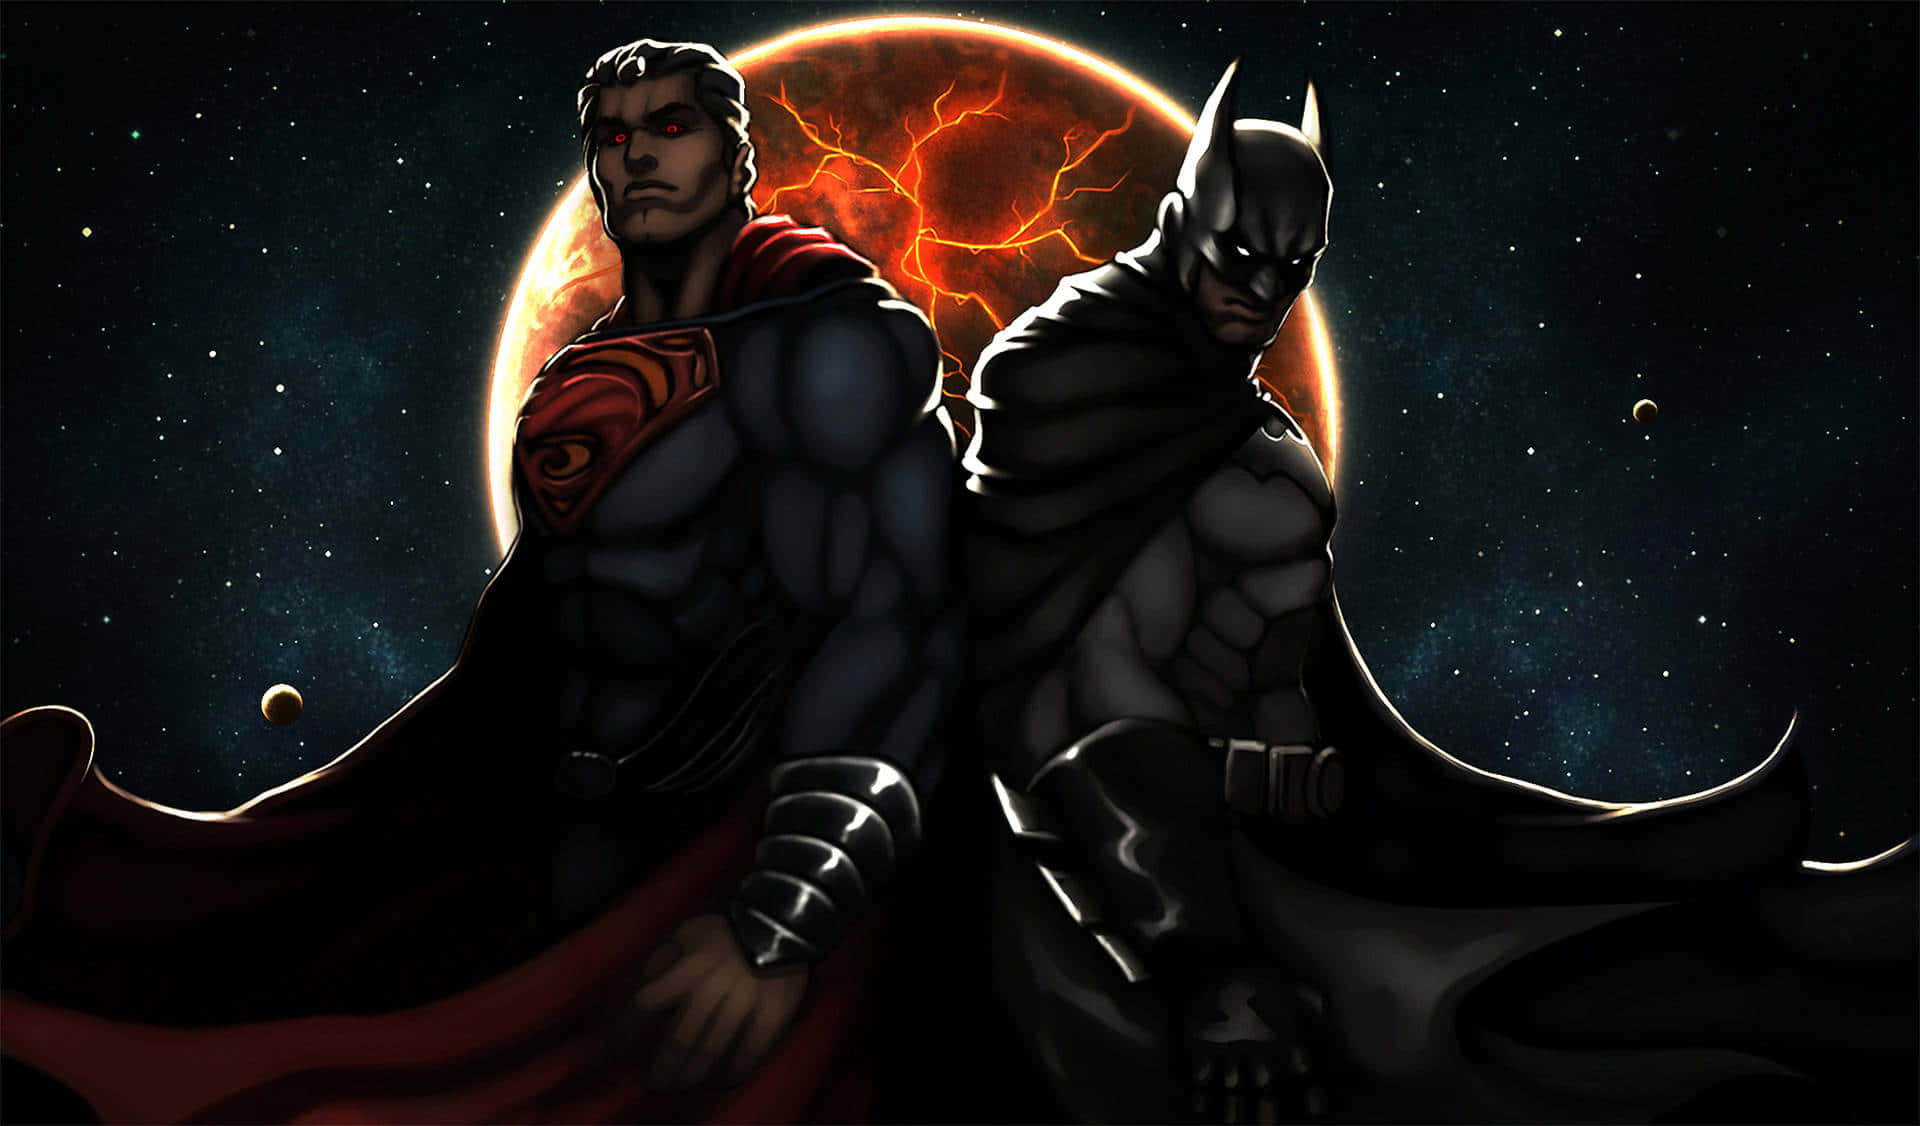 Batmany Superman Parados Frente A Un Fondo Oscuro.